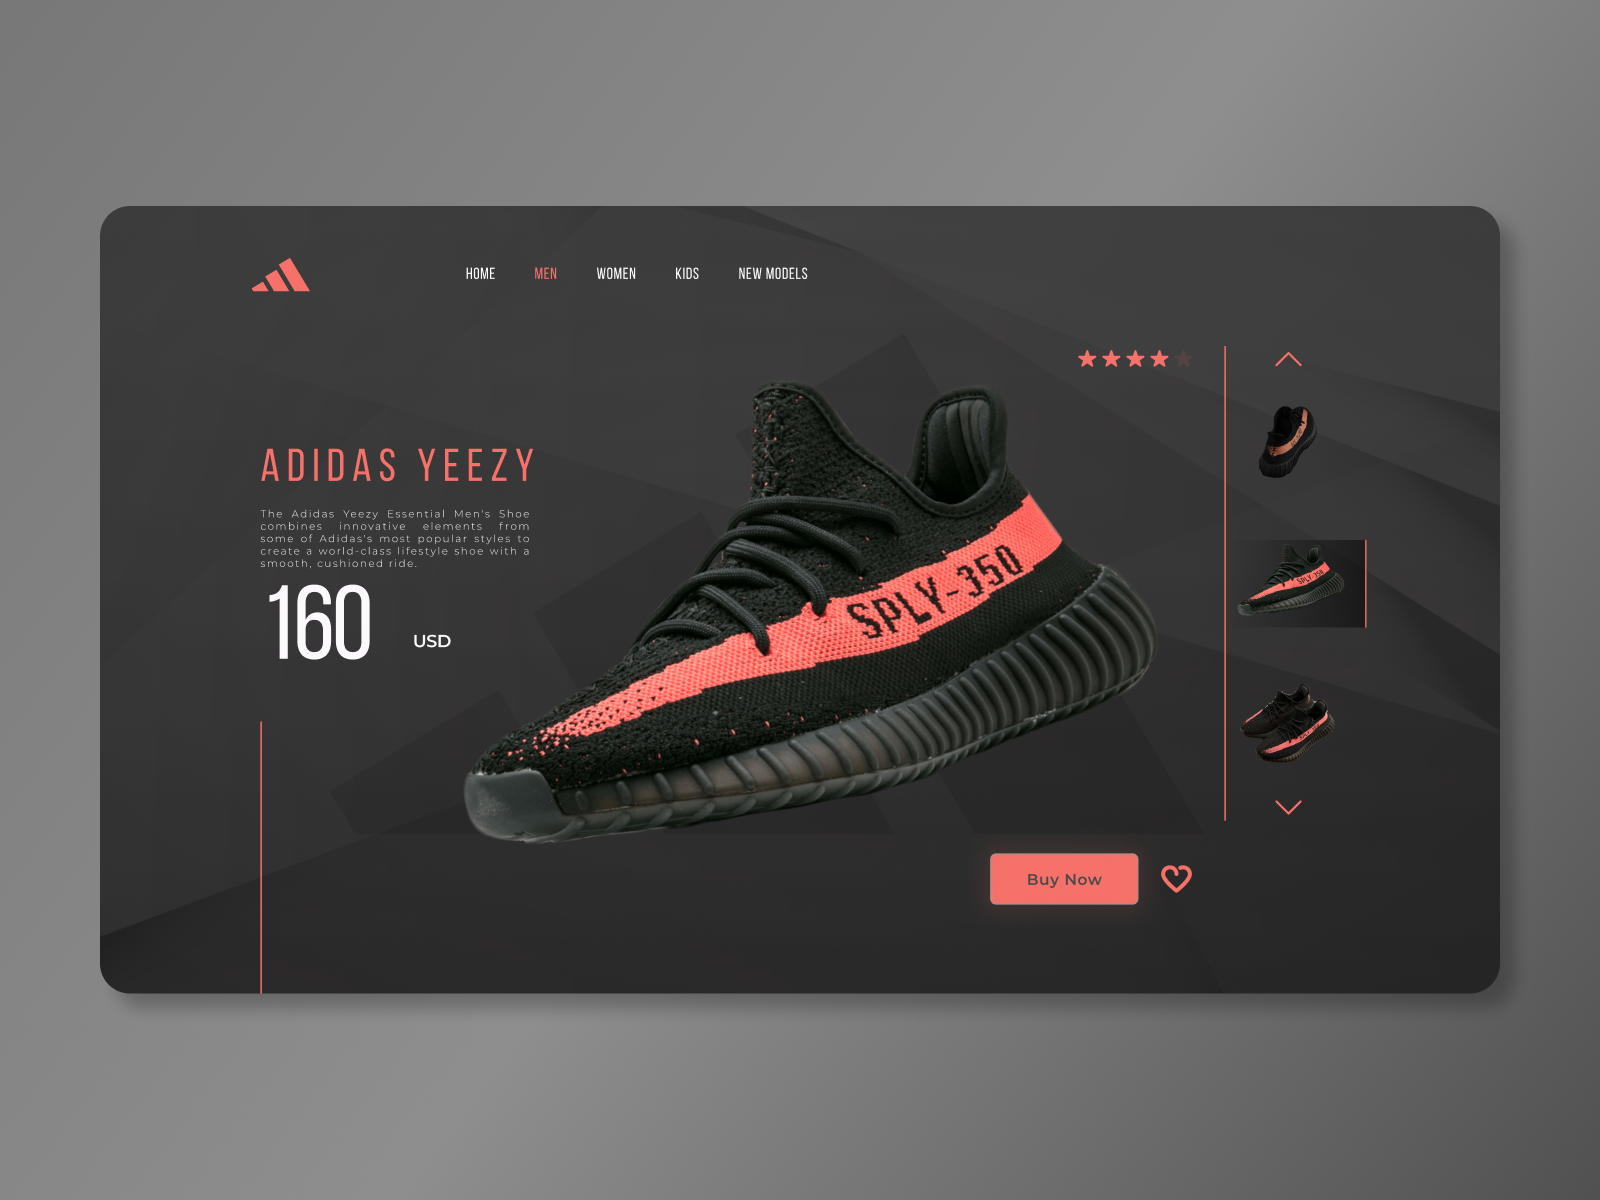 Adidas Yeezy - Web UI by Ilija 